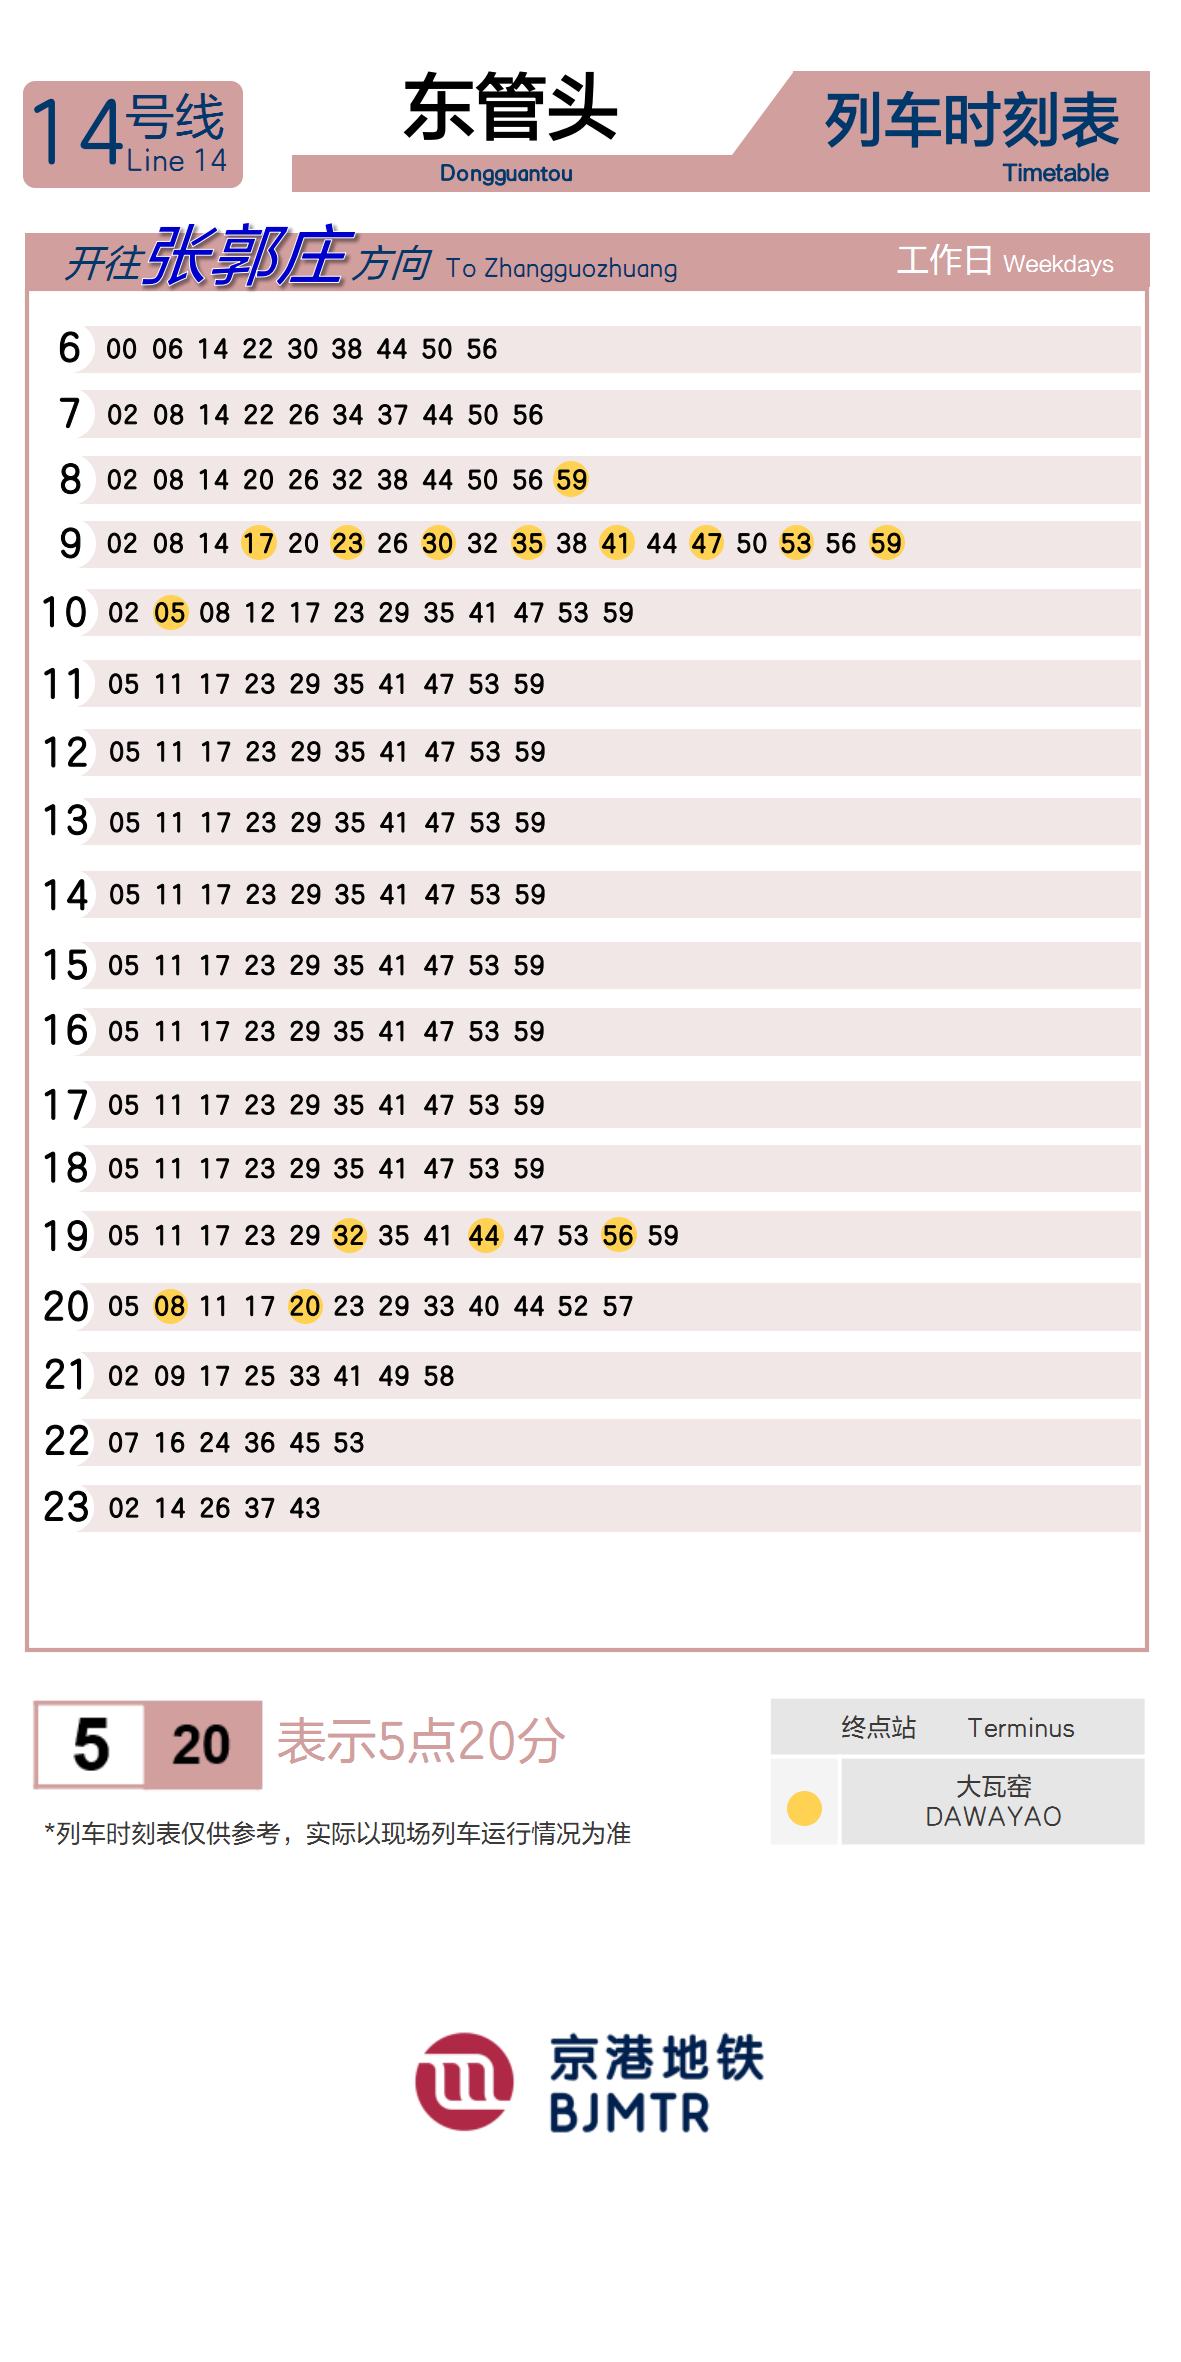 Line 14Dongguantou时刻表